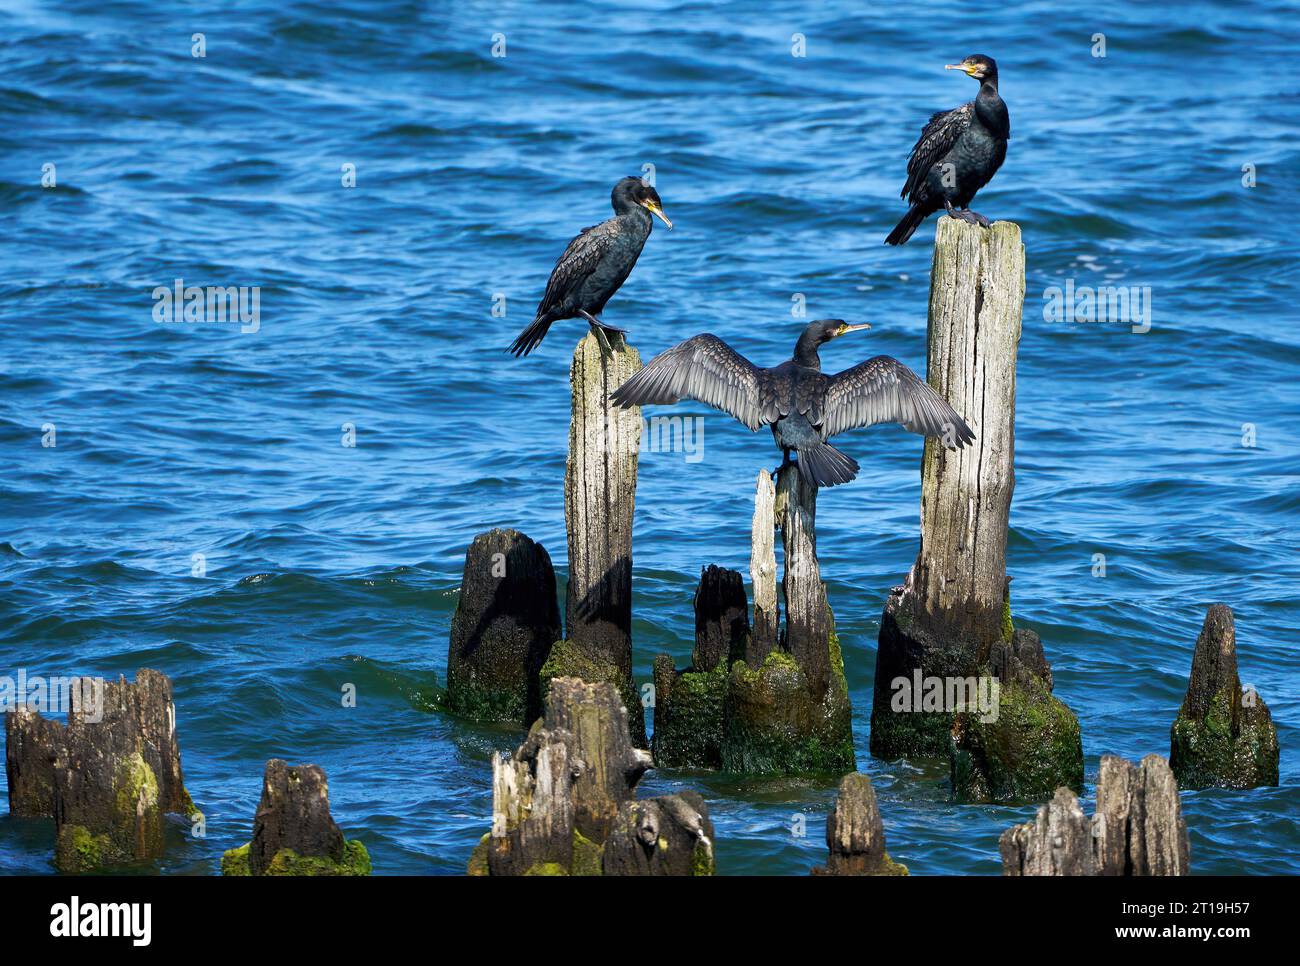 Drei große Kormorane (Phalacrocorax carbo) sitzen auf alten verwitterten Kühnen im Meer, einer mit gespreizten Flügeln Stockfoto